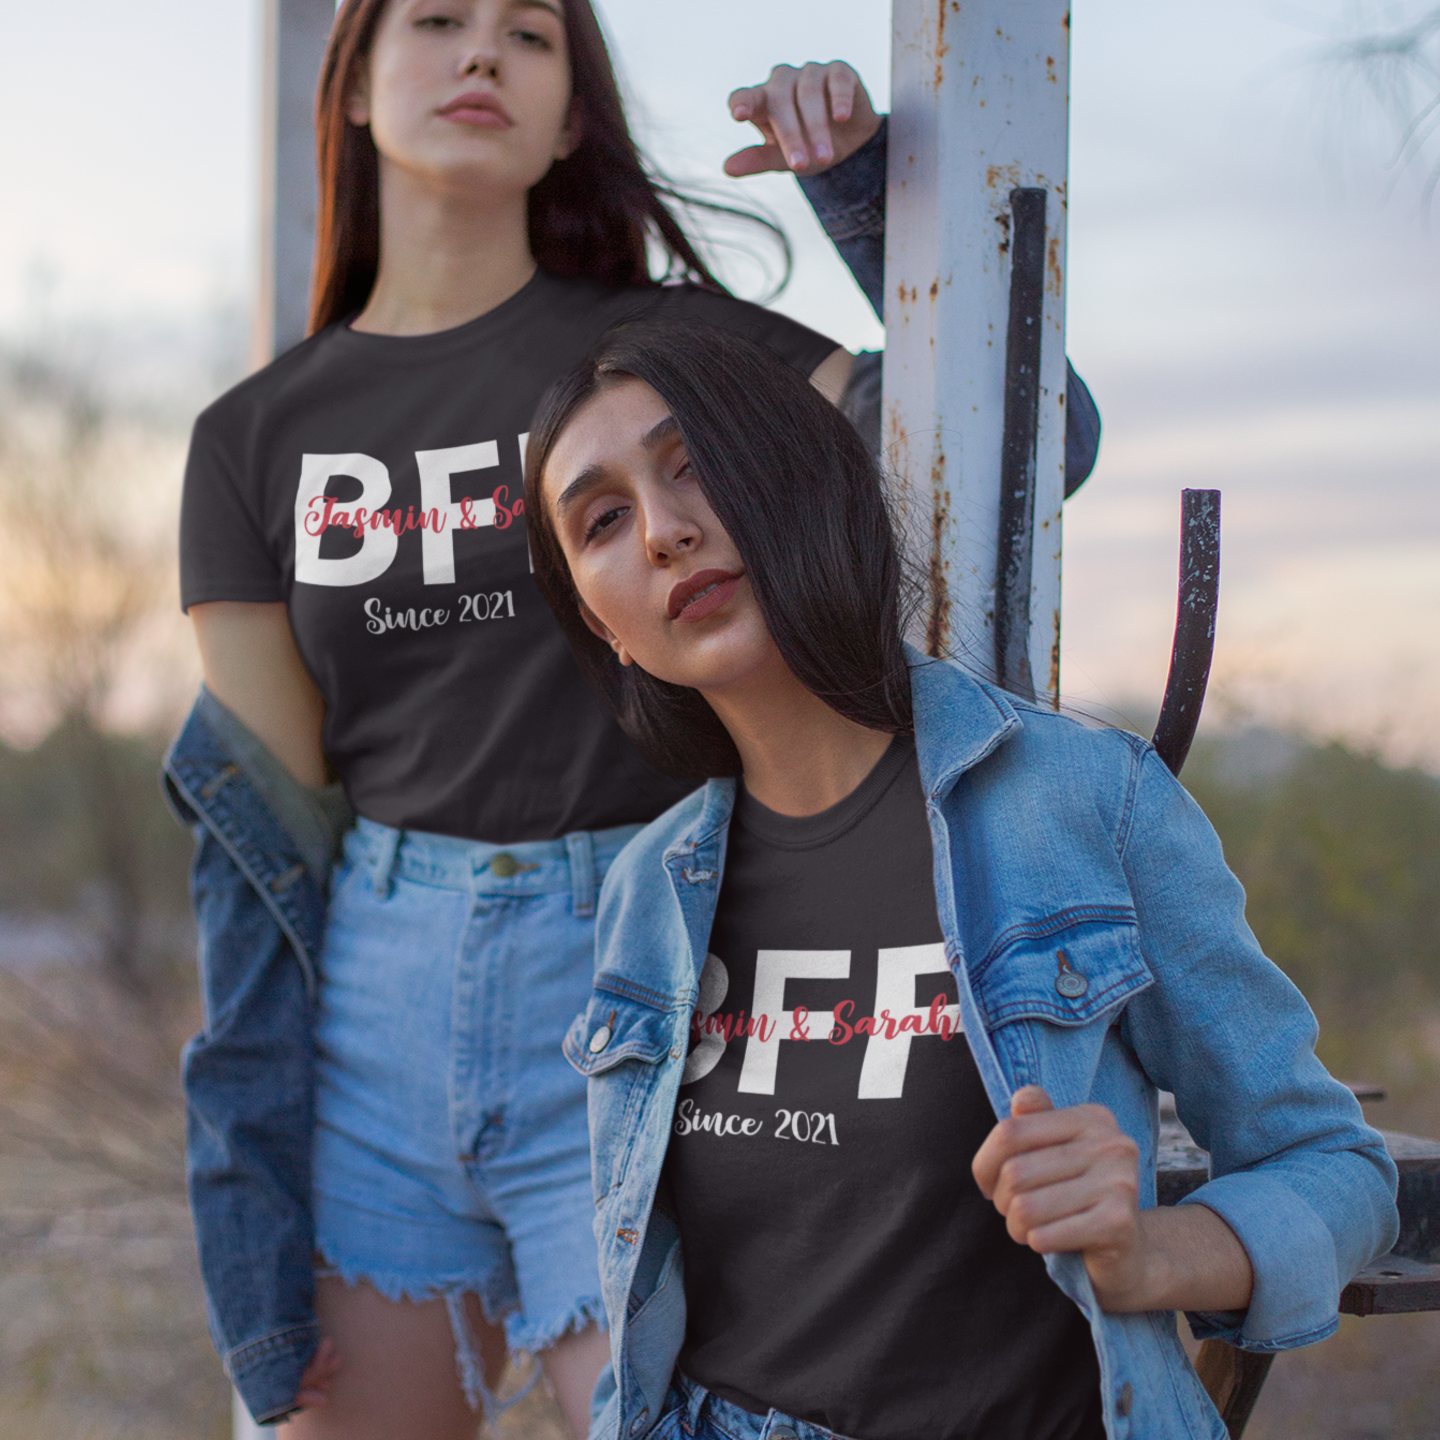 BFF sind ein einzigartig personalisiertes Geschenk für beste Freundinnen. Das T-Shirt Set beinhaltet ein Wunschnamen und Wunschdatum, sodass Sie ein unvergessliches Geschenk mit einem einzigartigen persönlichen Touch machen können. schwarze damen shirts